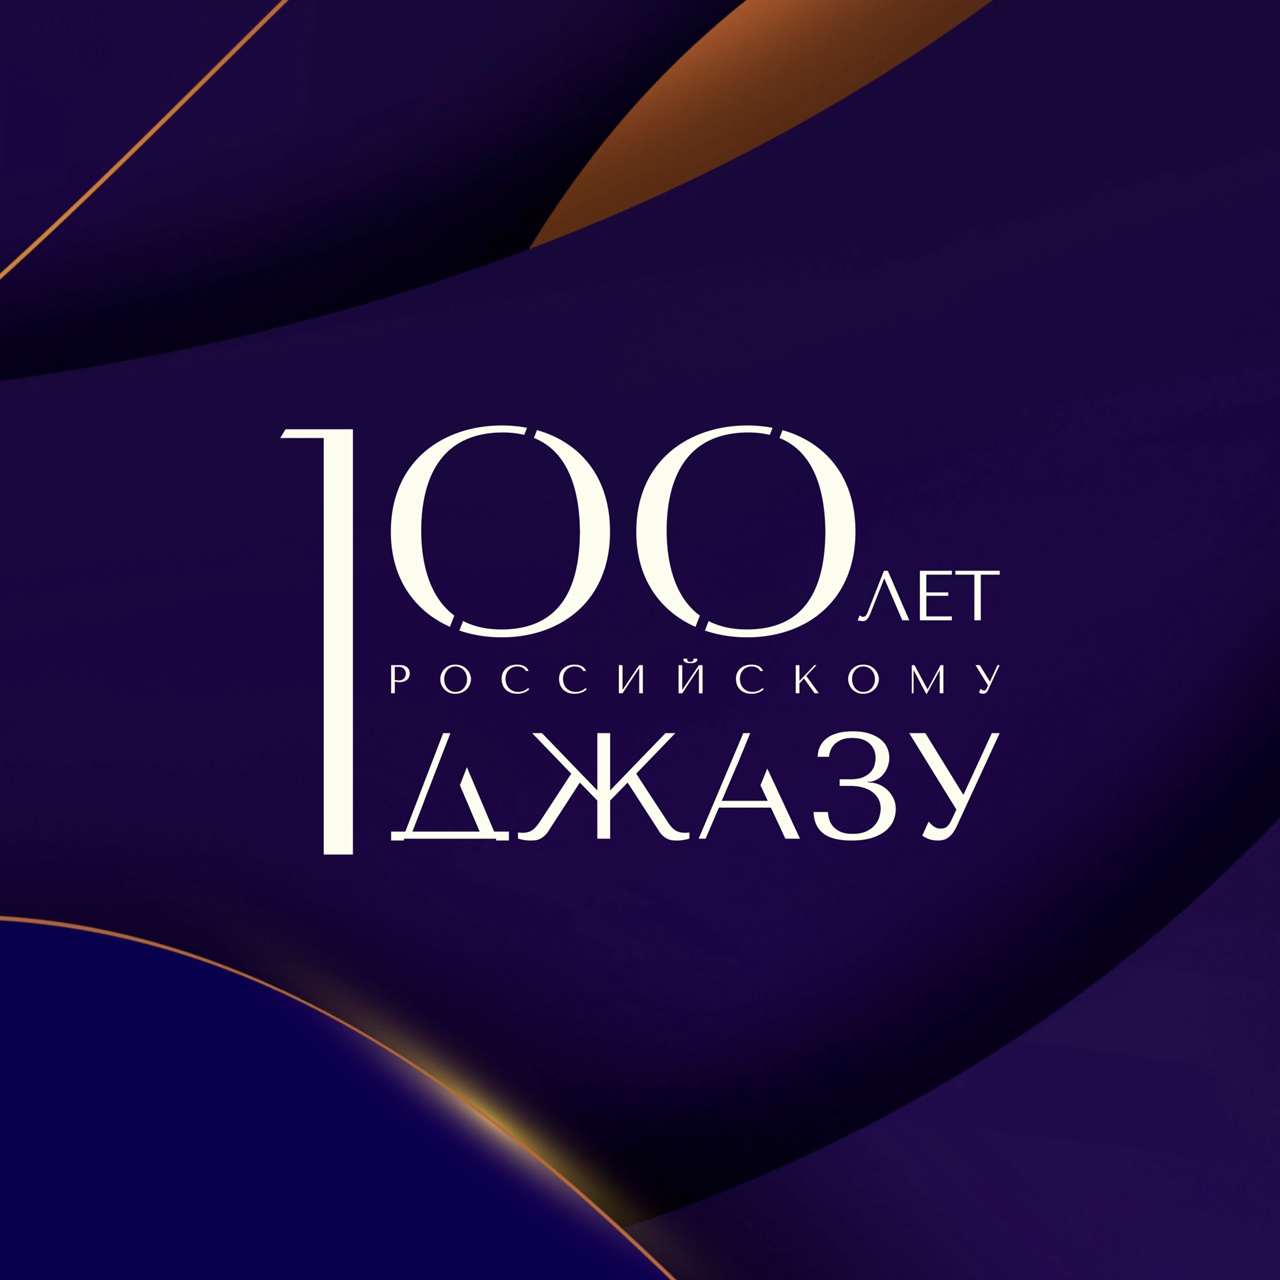 100 лет Российскому джазу